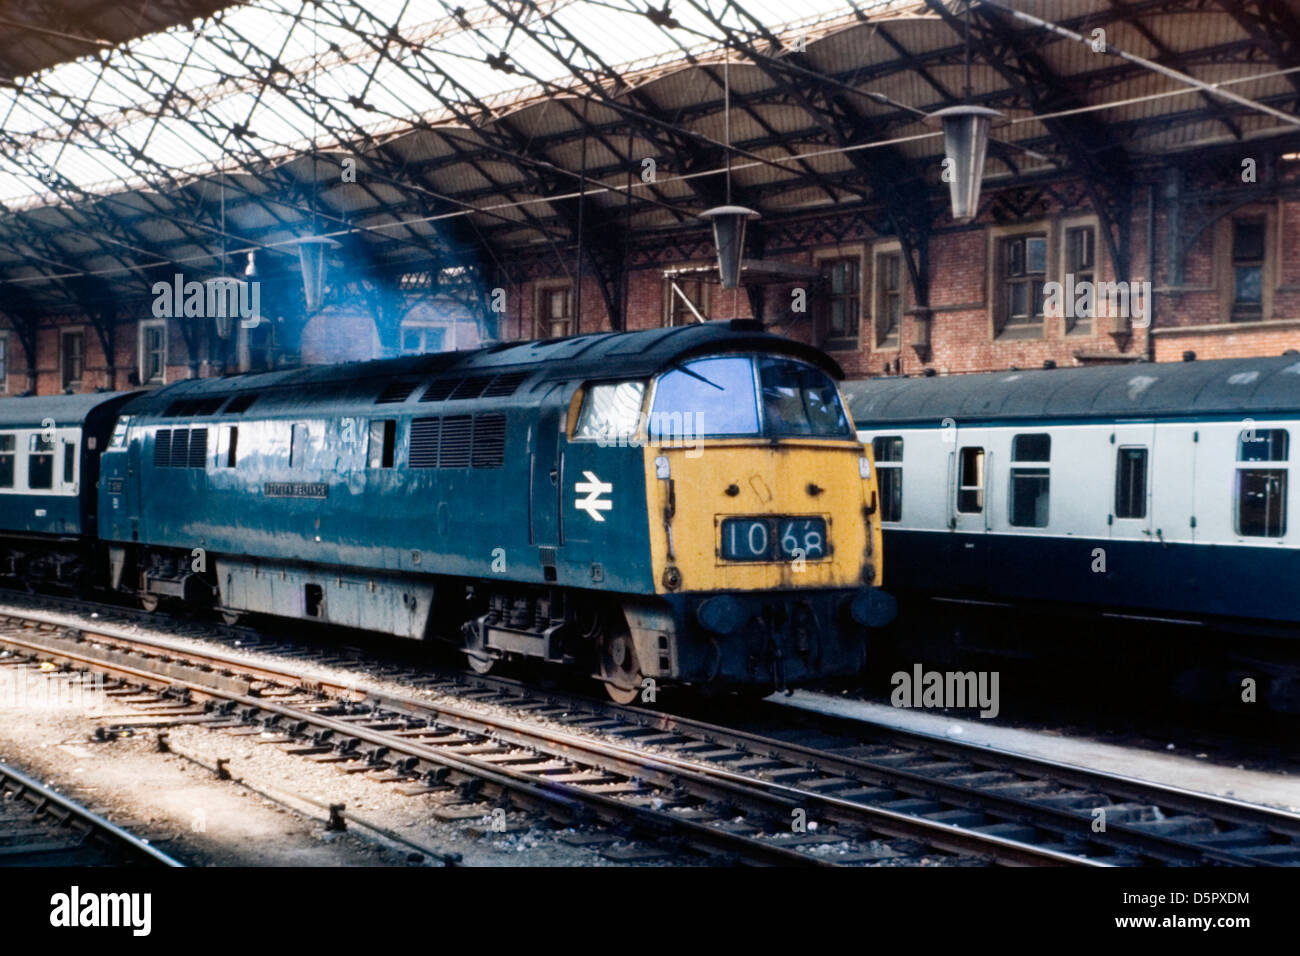 Locomotive diesel d1068 la dépendance de l'ouest en laissant la gare Temple Meads de Bristol 1976 Banque D'Images